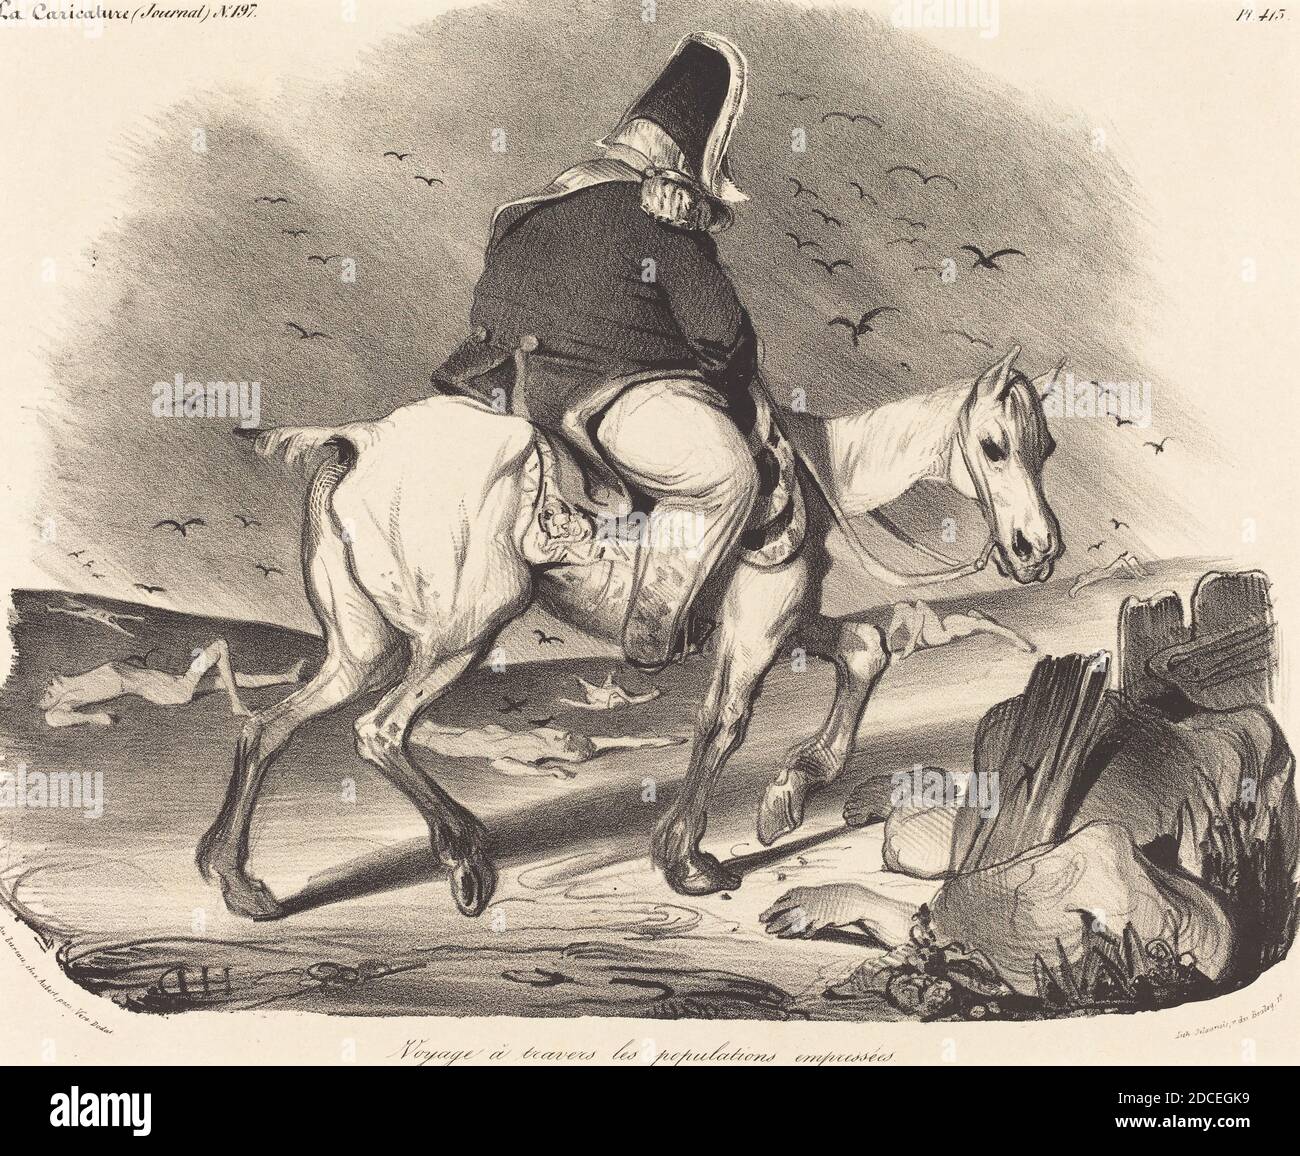 Honoré Daumier, (artist), French, 1808 - 1879, Voyage a travers les populations empressées, La Caricature: pl. 413, (series), 1834, lithograph Stock Photo